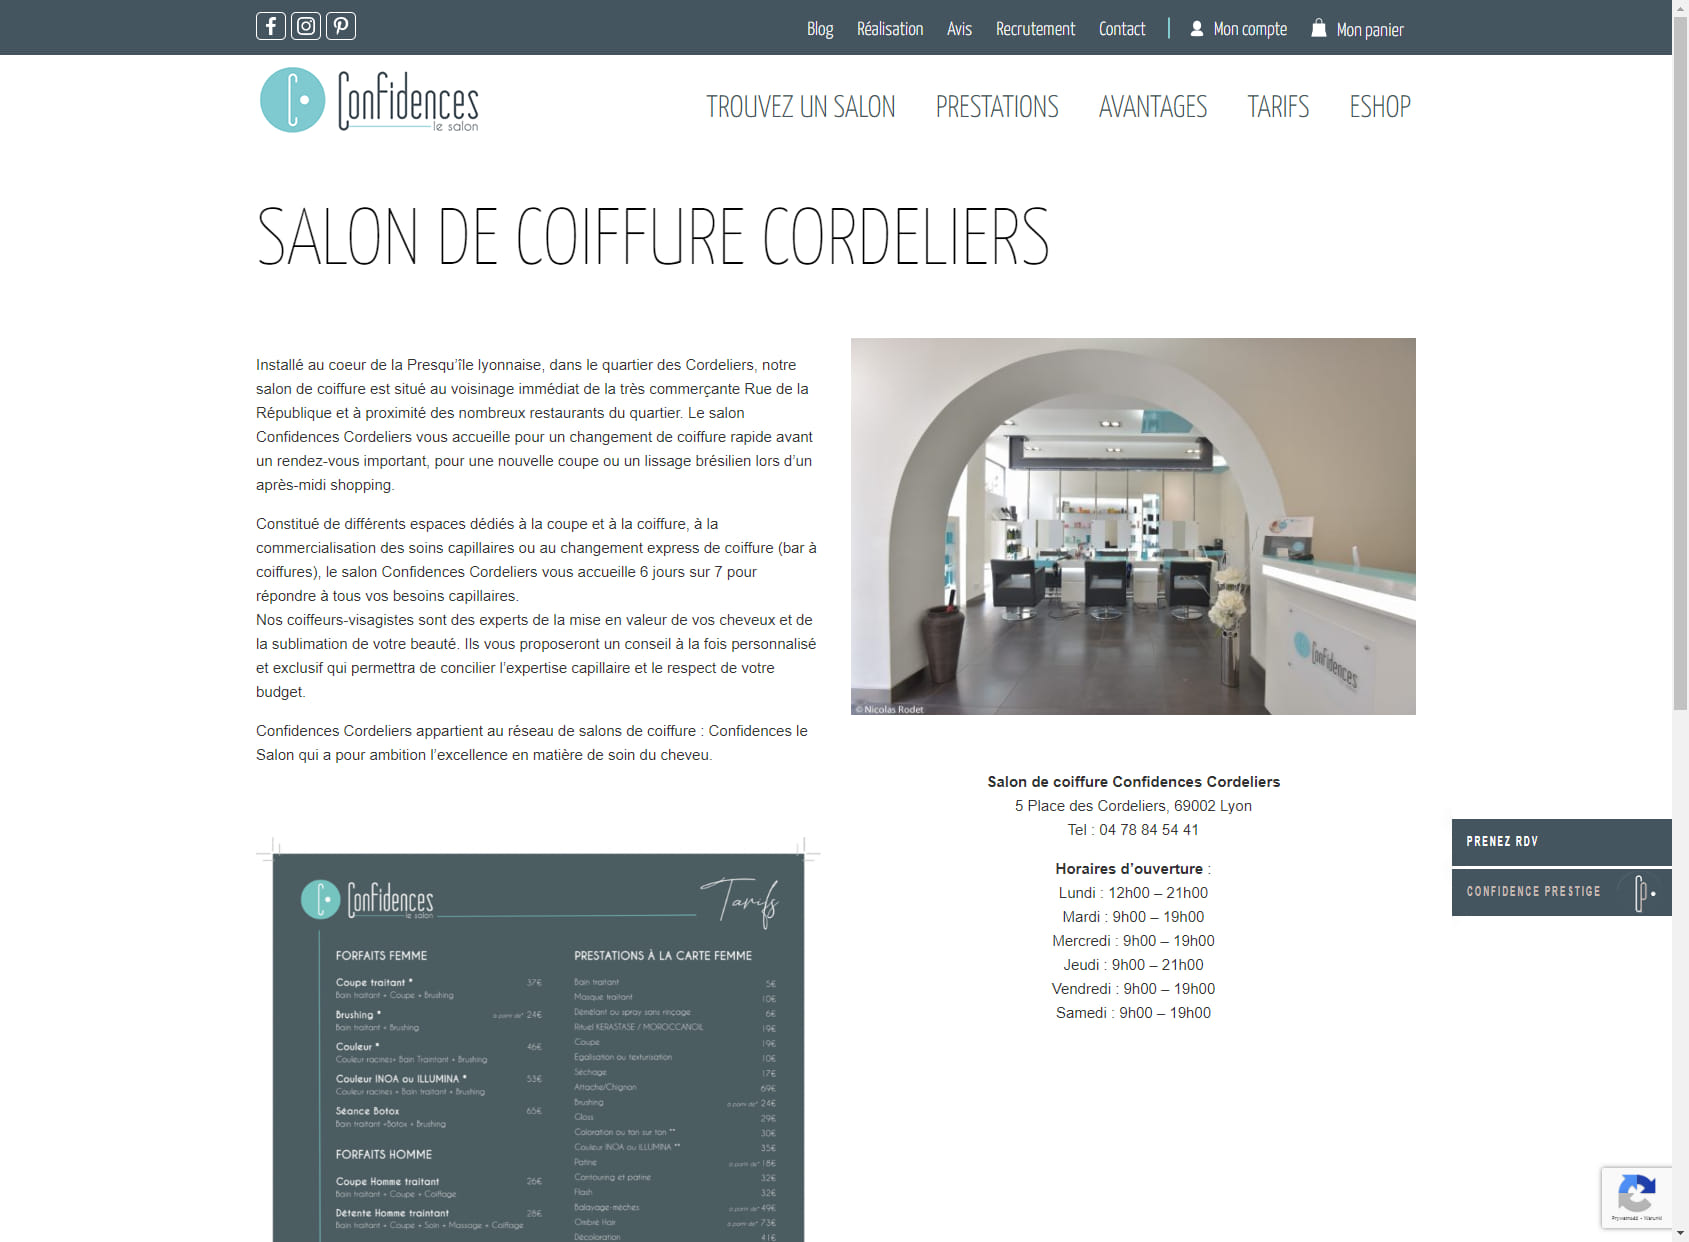 Confidences Le salon - Cordeliers -lyon 2 -coiffure